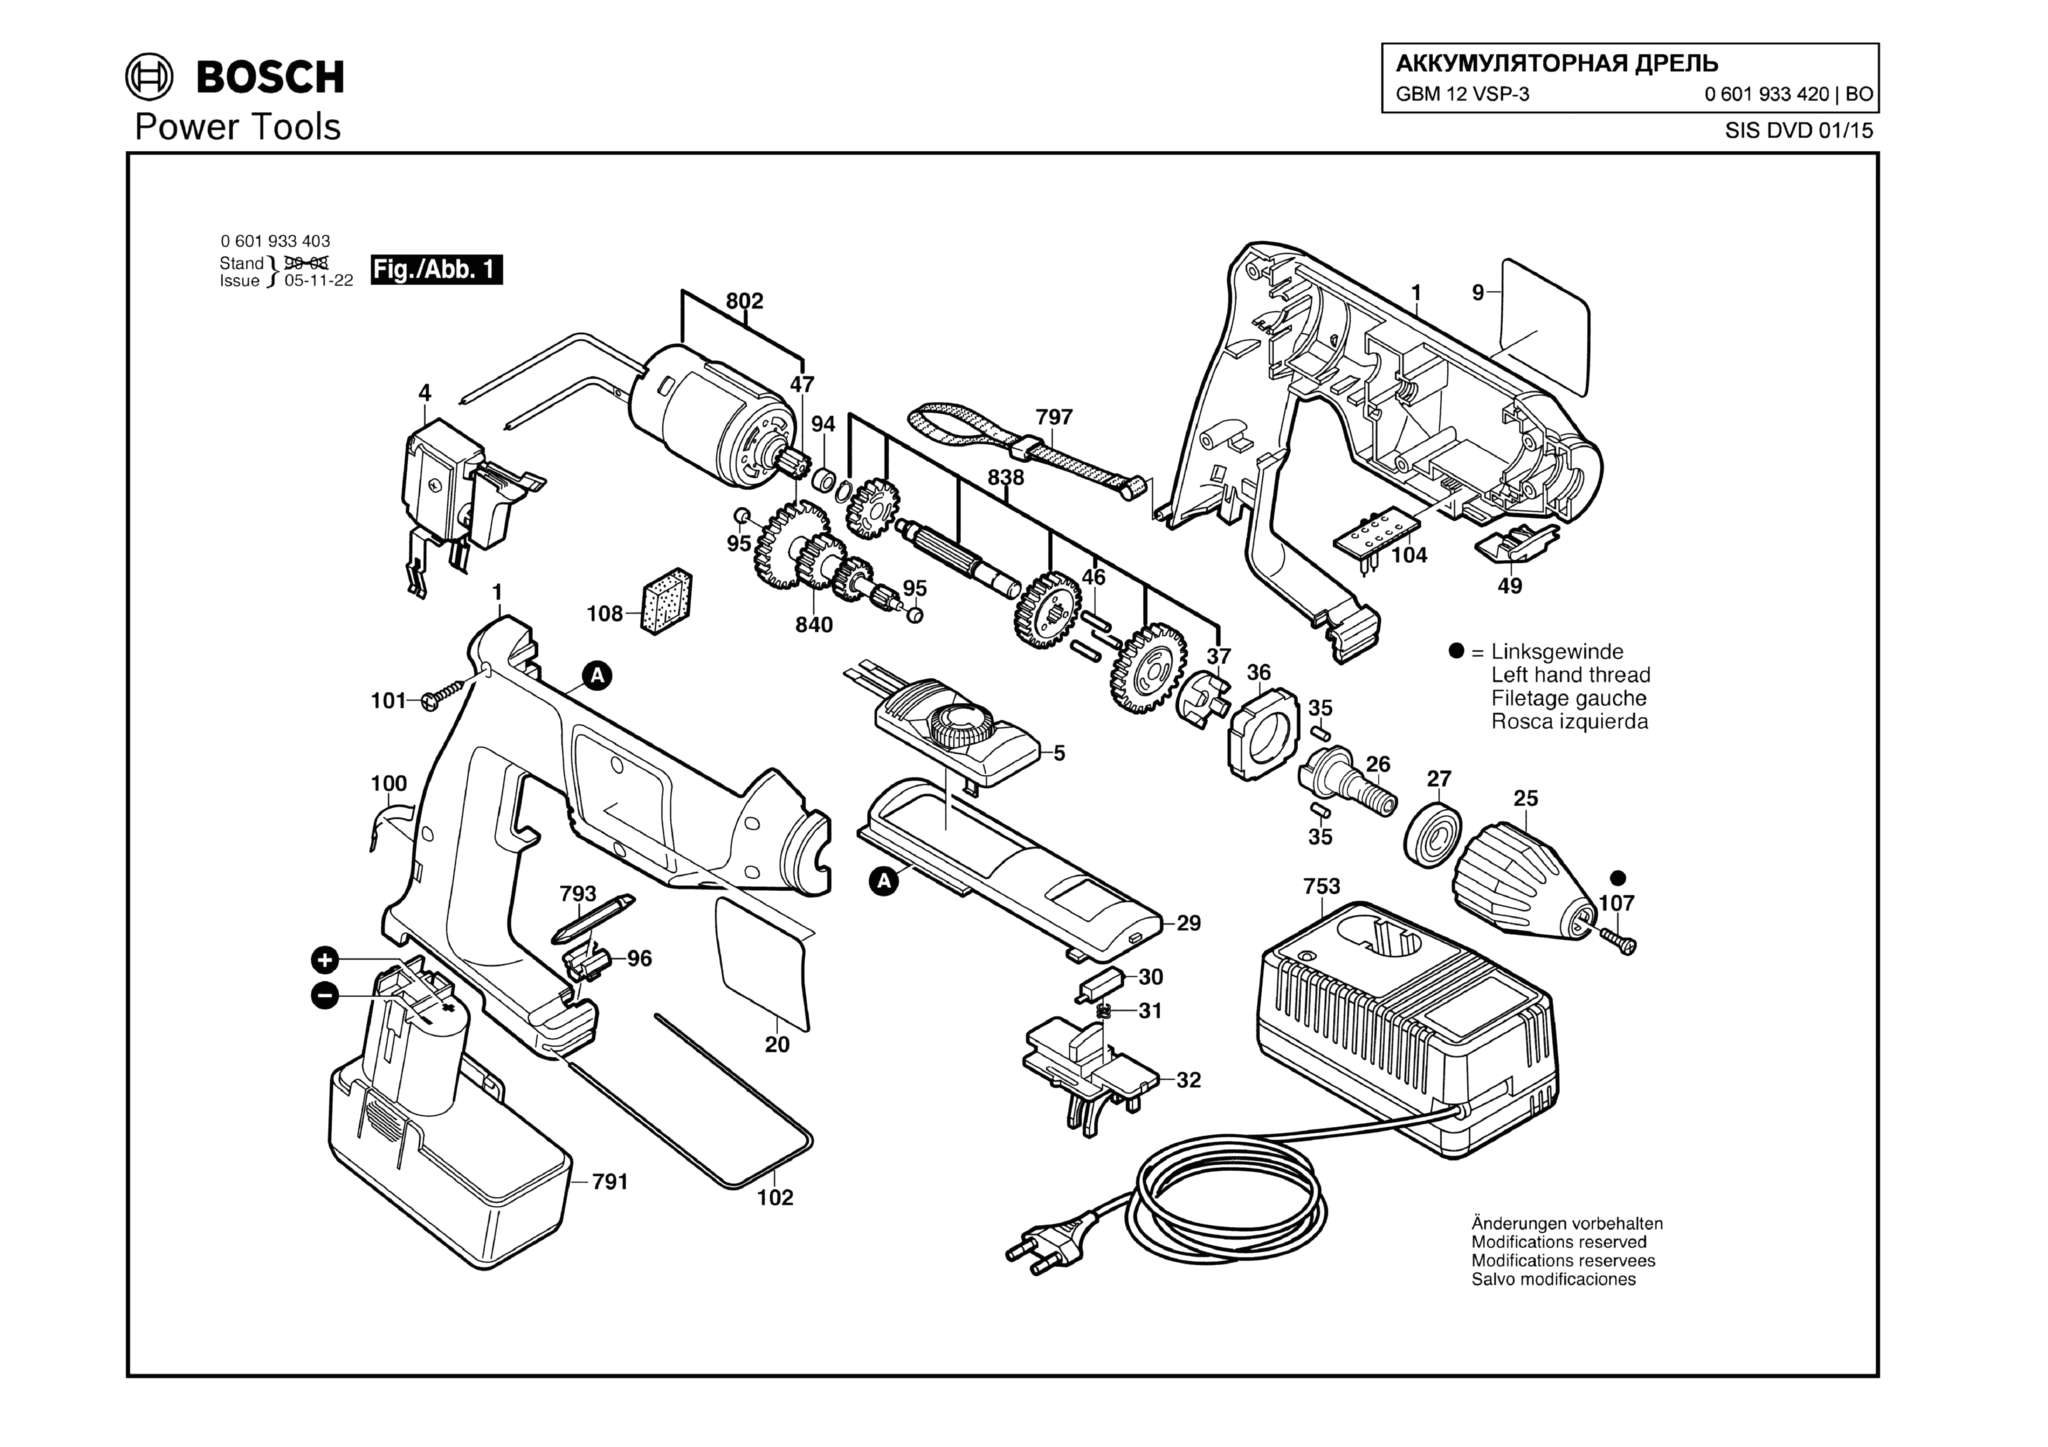 Запчасти, схема и деталировка Bosch GBM 12 VSP-3 (ТИП 0601933420)